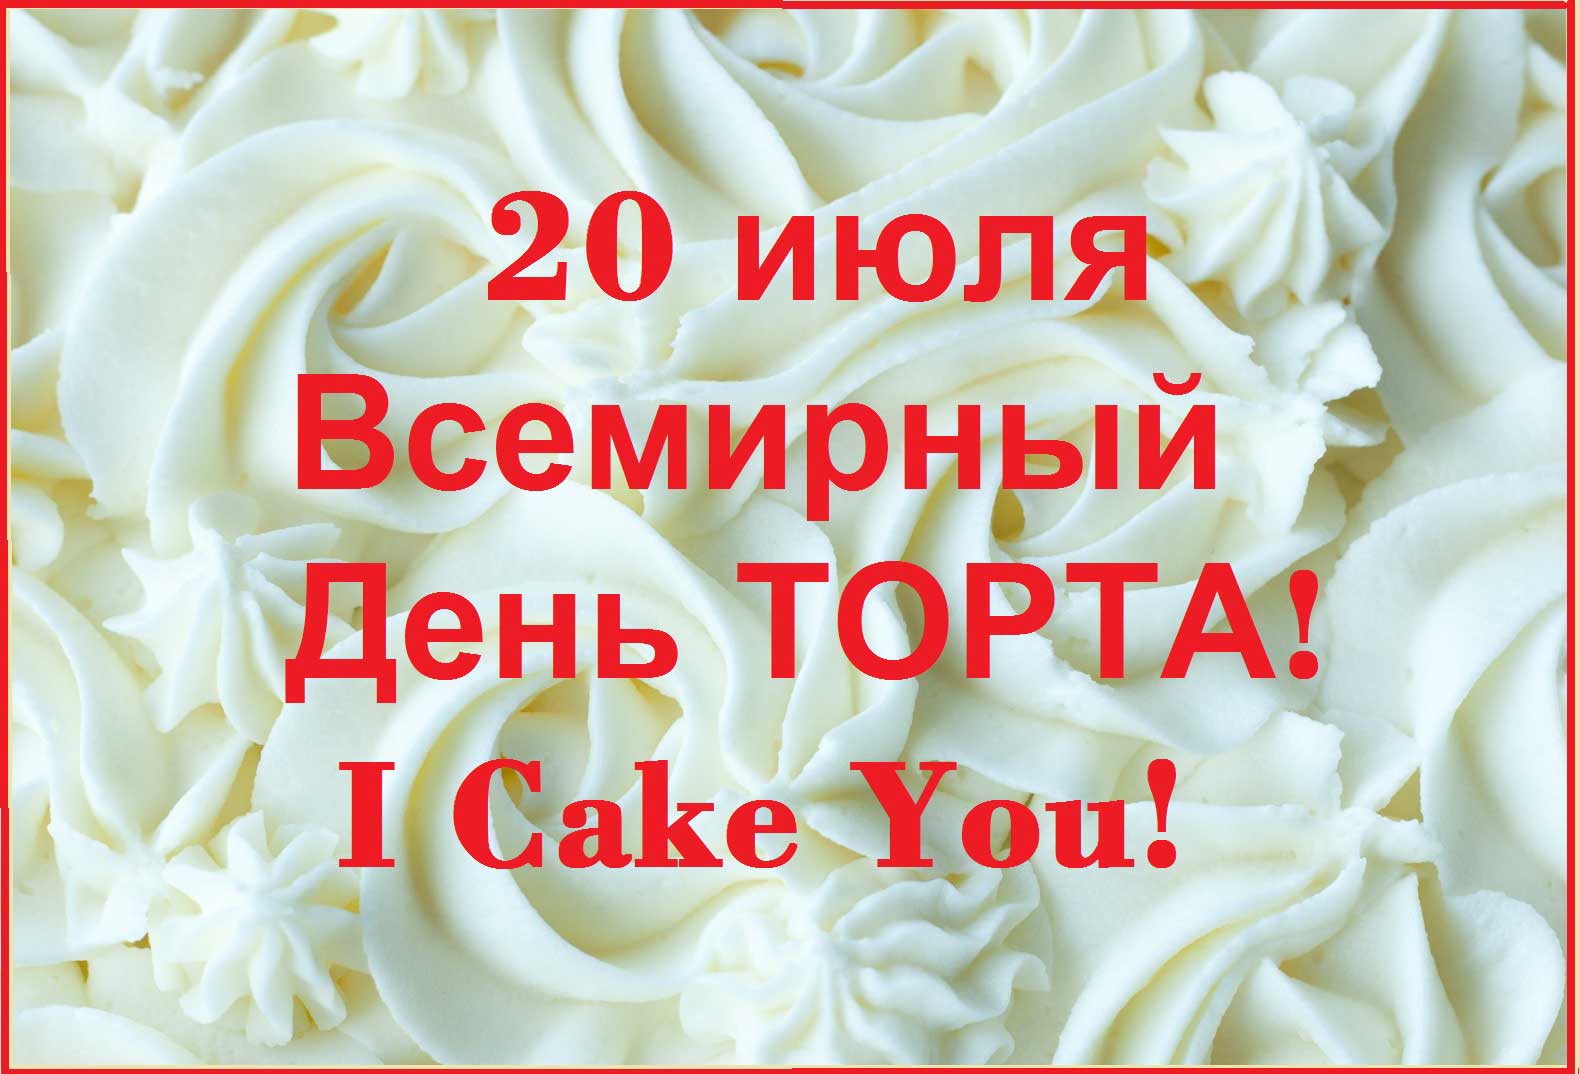 20 июля - День торта! I Cake You!